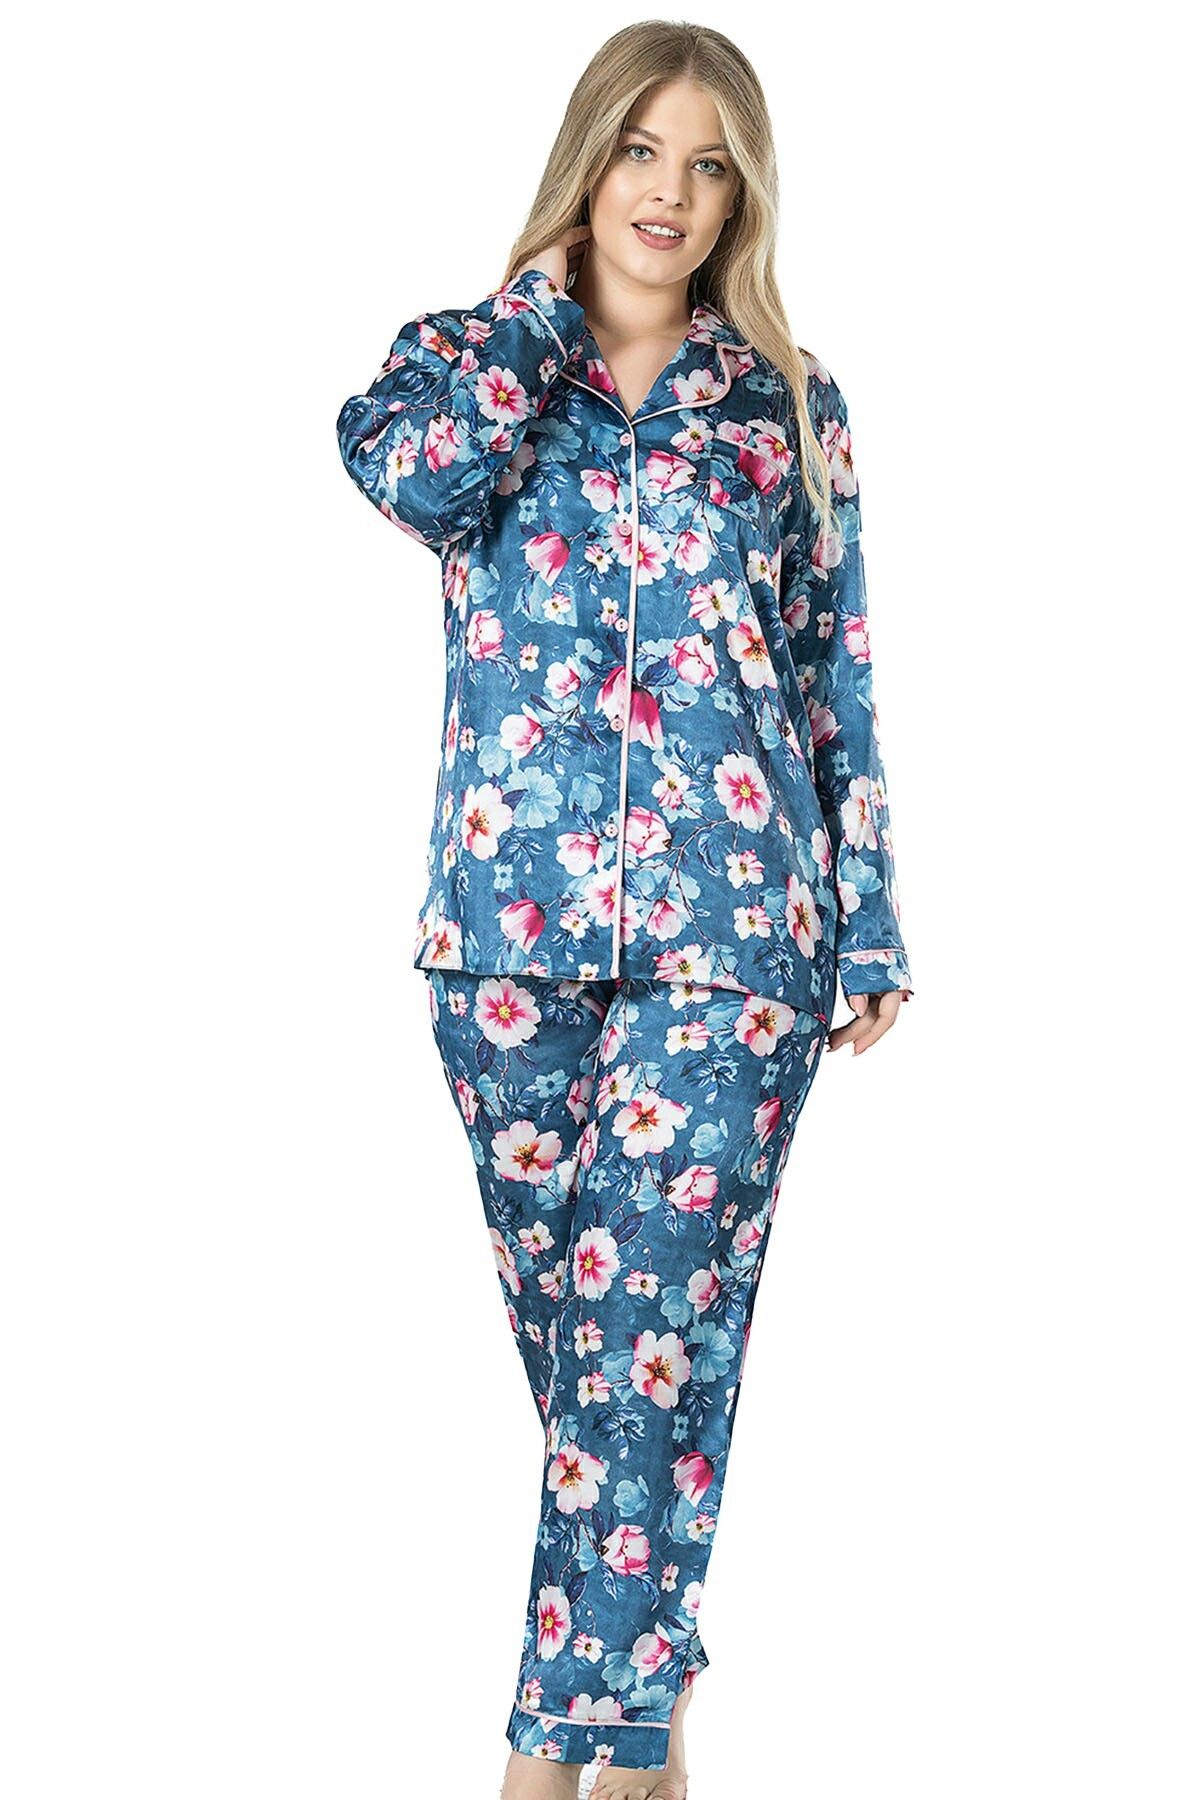 Vienetta Saten Komple Düğmeli Pijama Takım.
, 160881